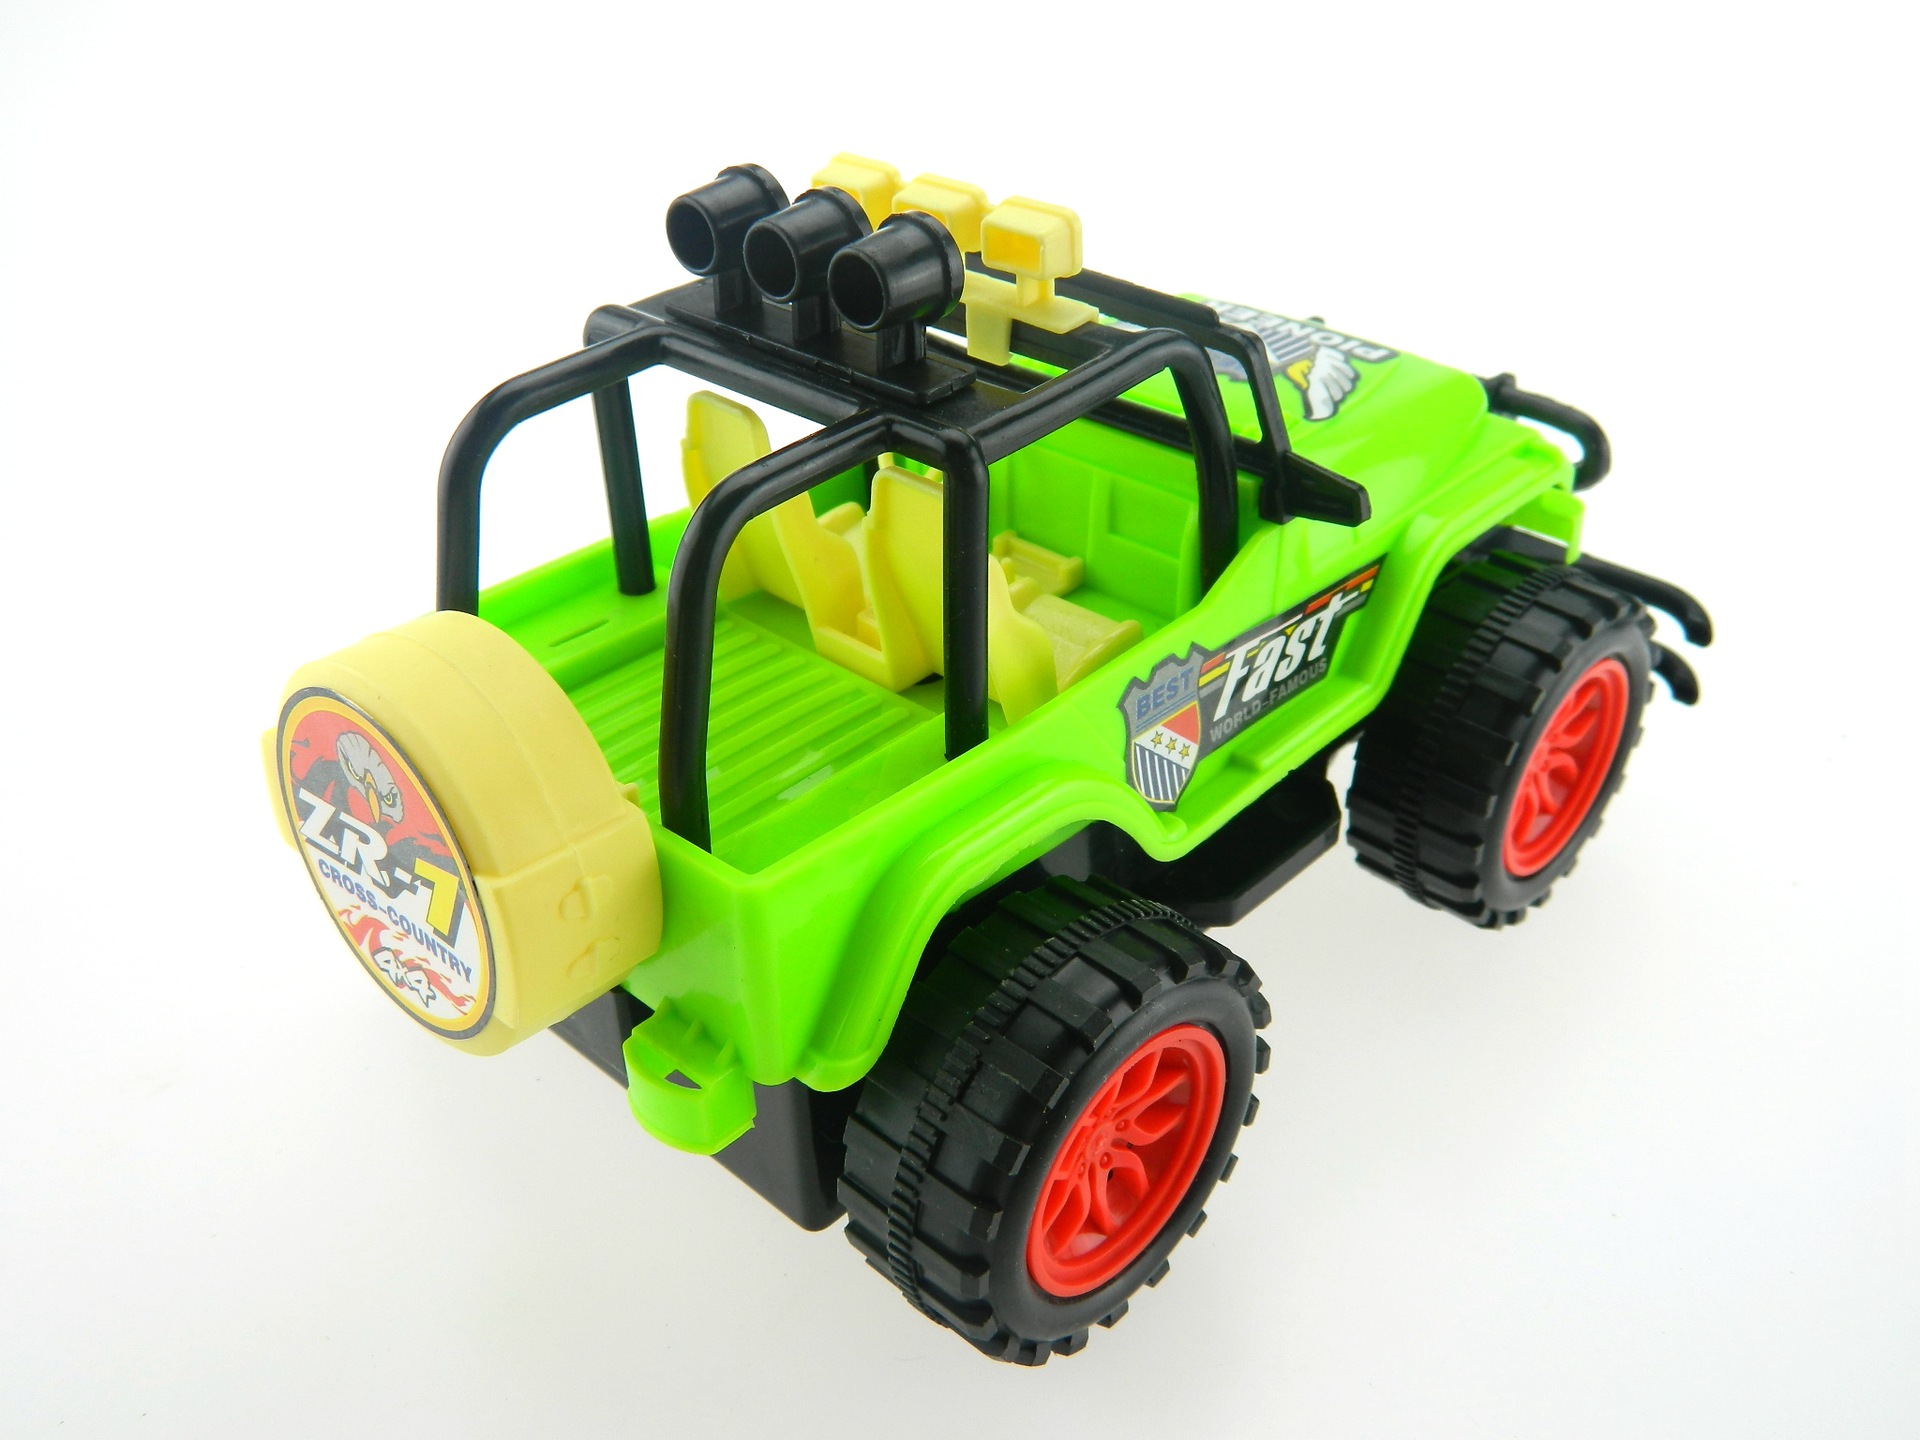 儿童电动车四轮双驱大款电动汽车可坐人玩具童车小孩玩具车批发-阿里巴巴